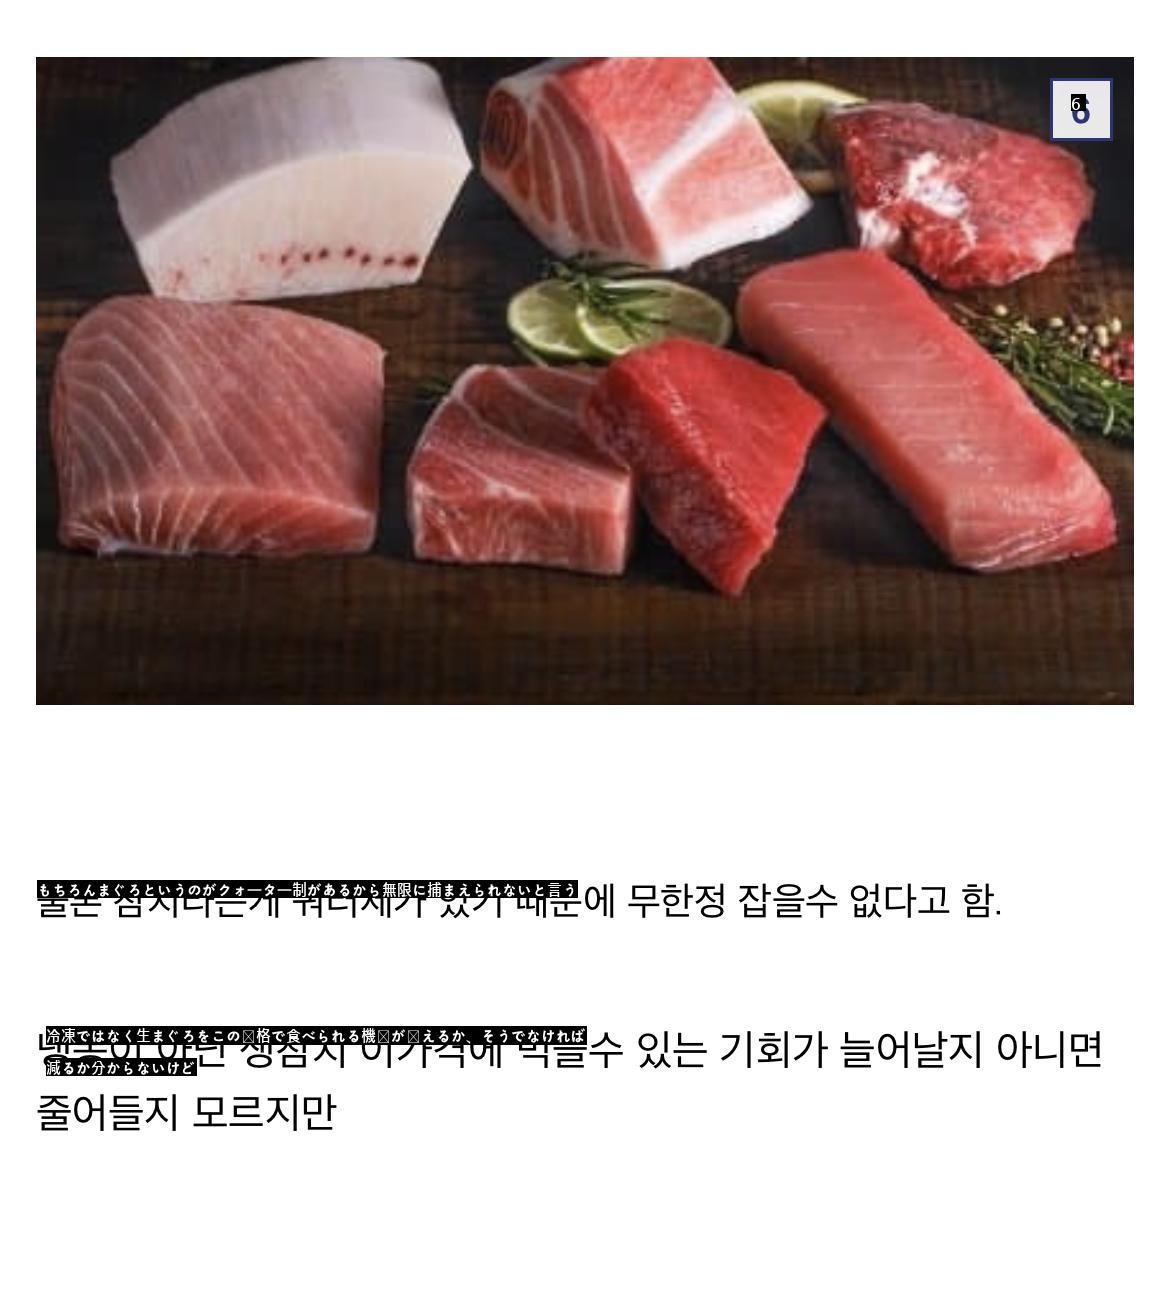 ニコニコ、最近韓国で価格急落した食材No1